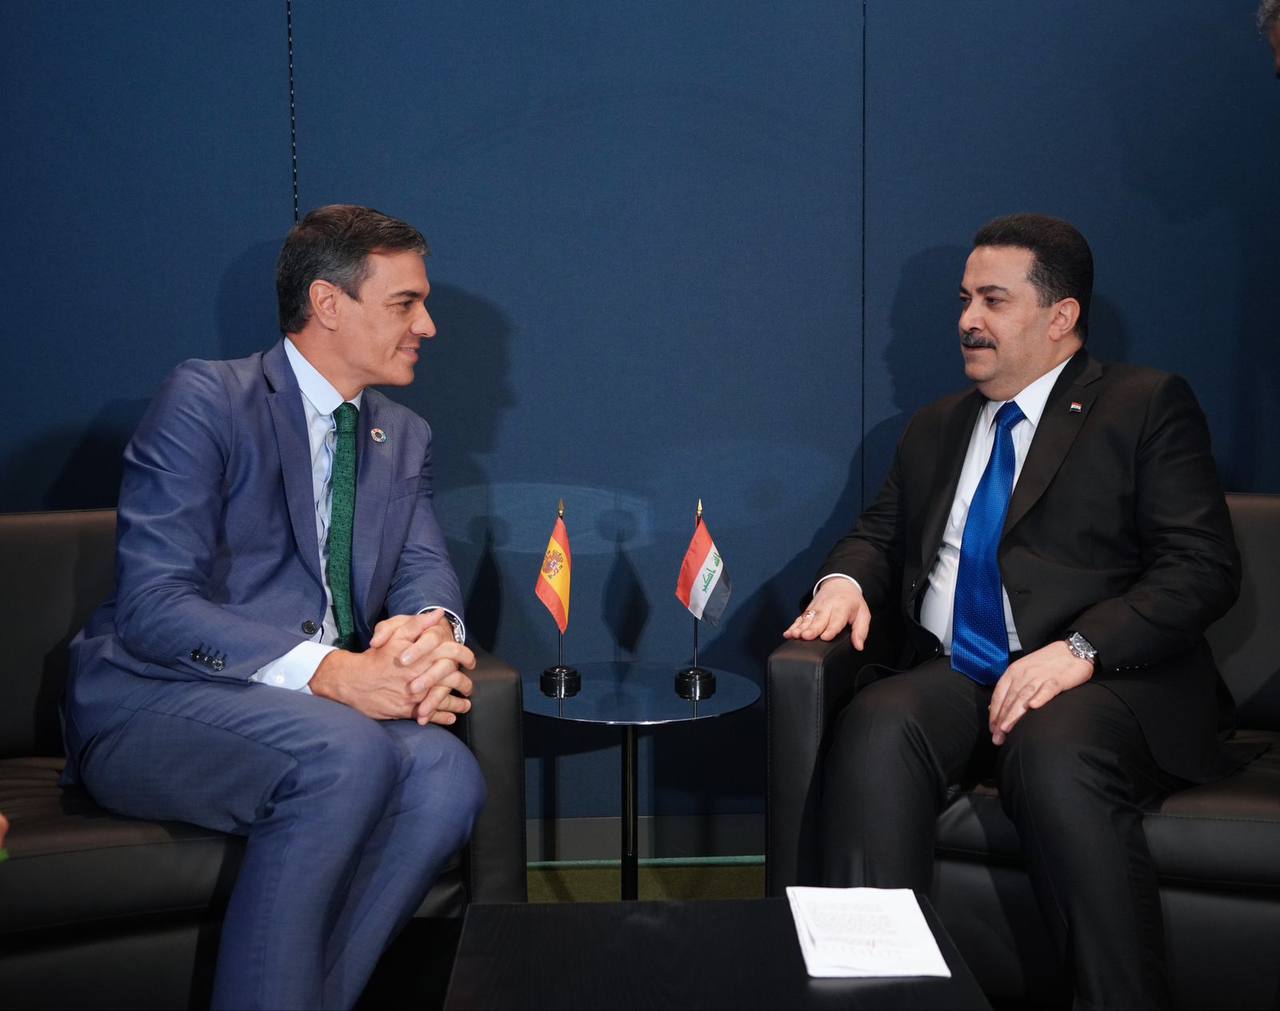 العراق وإسبانيا يؤكدان على تعزيز التعاون بين البلدين في معالجة التصحر